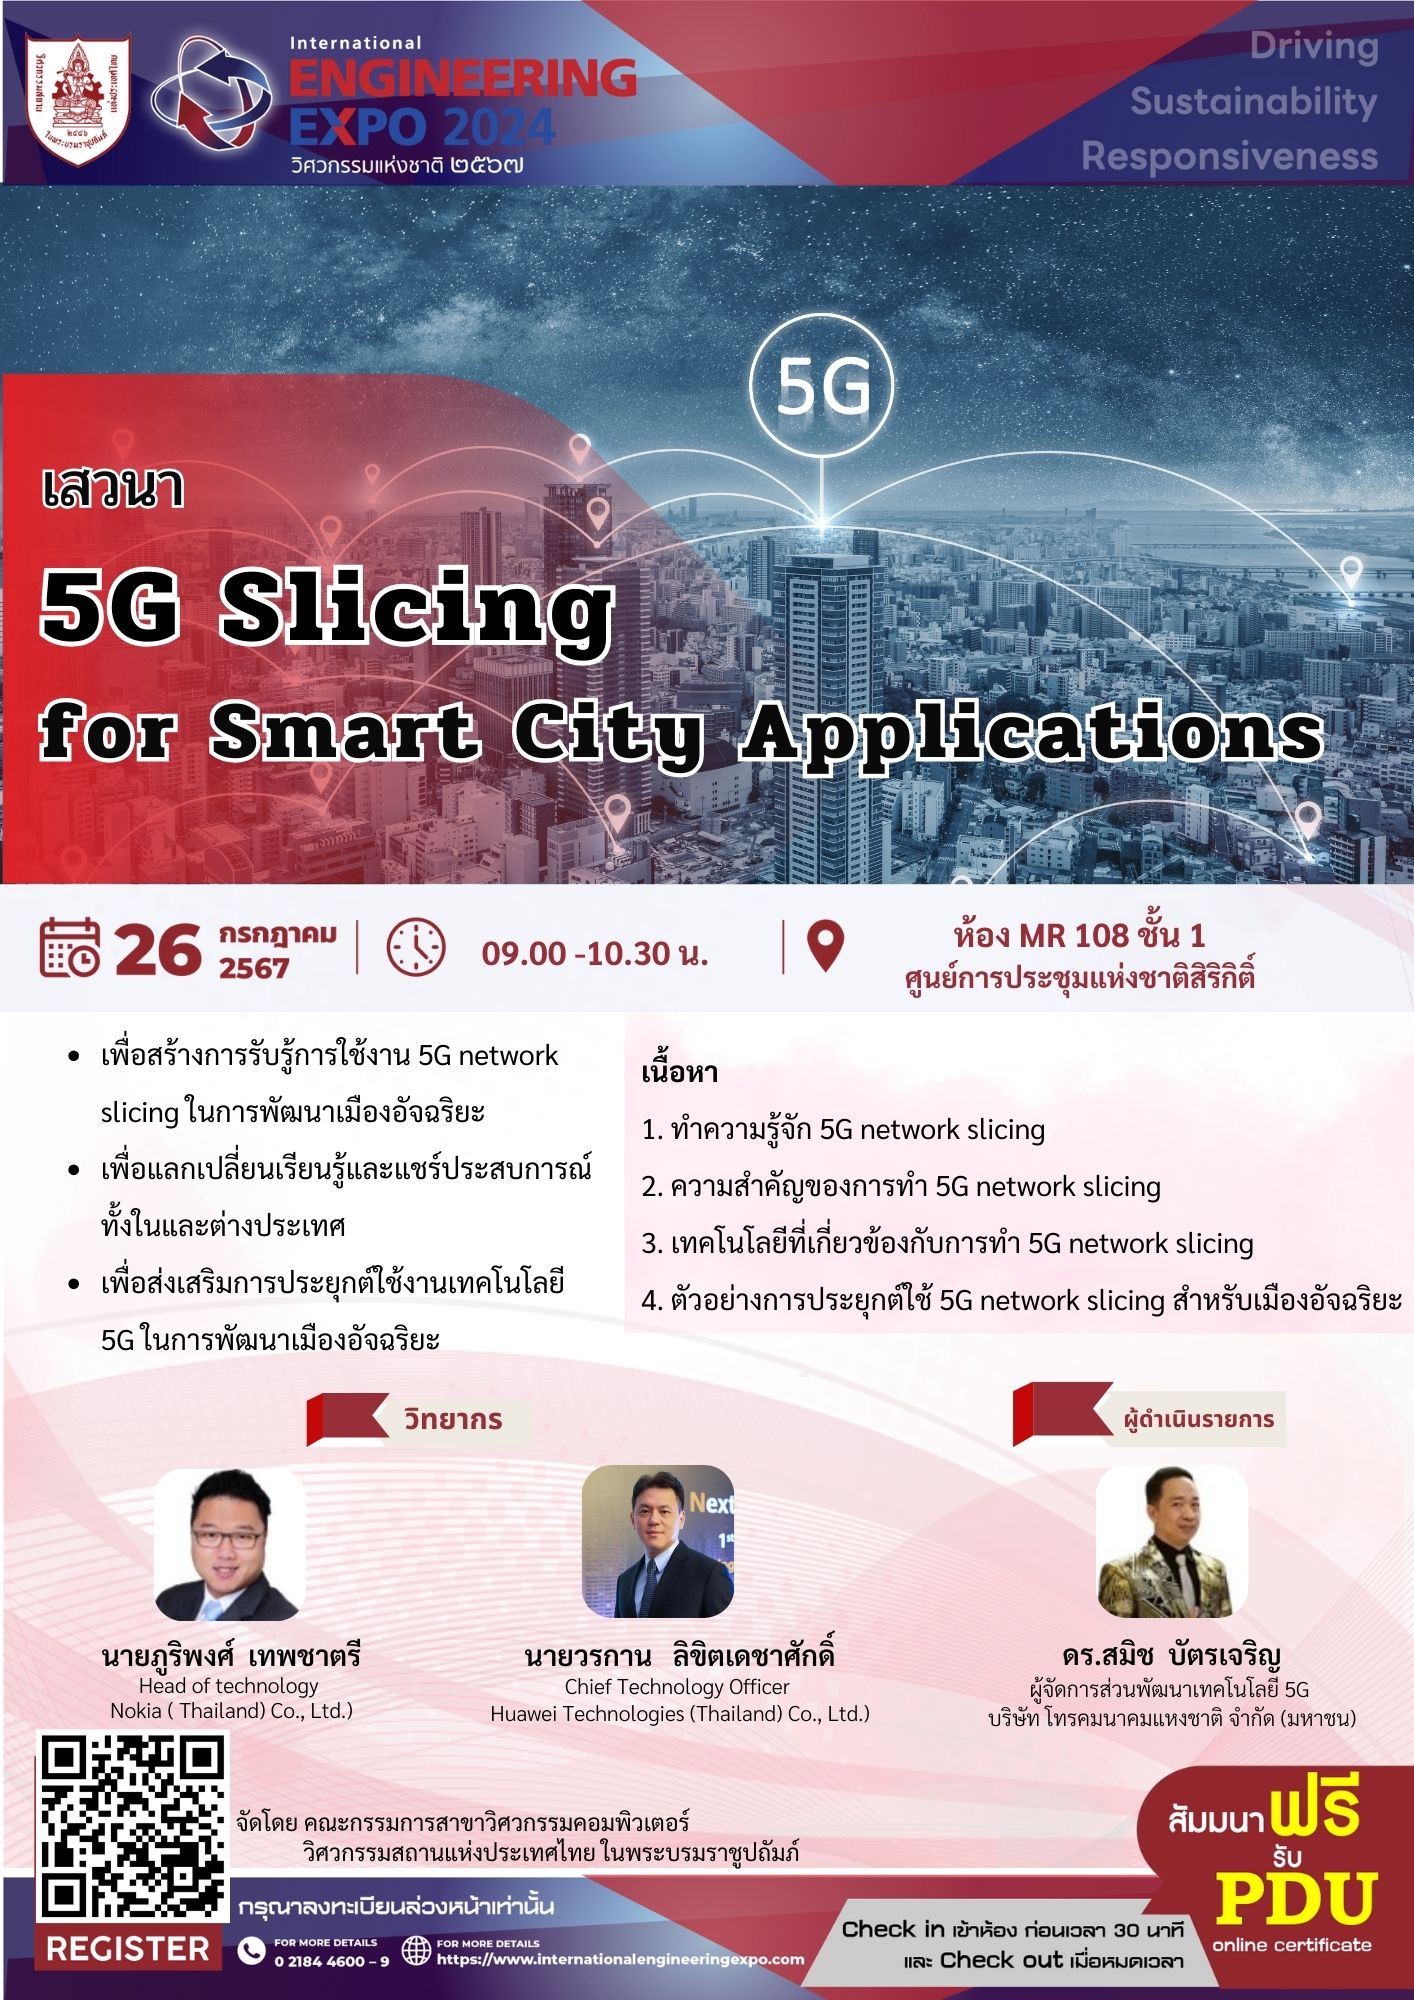 เสวนา "5G Slicing for Smart City Applications"